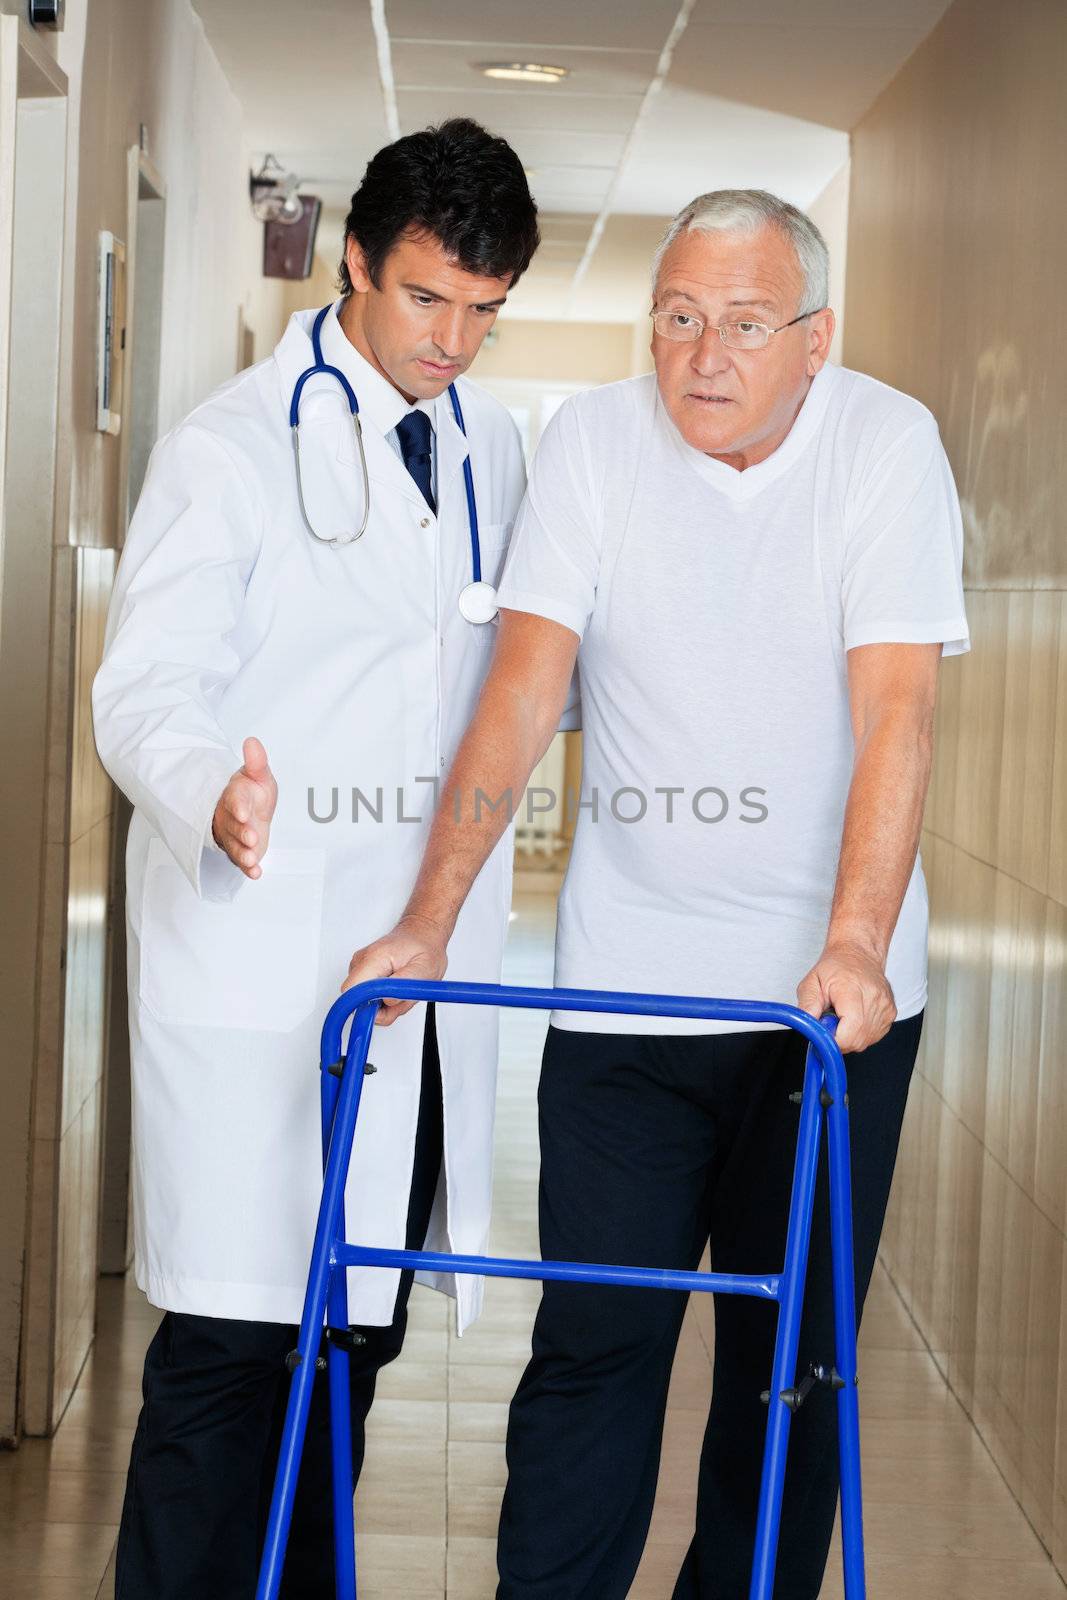 Doctor helping senior patient walk down hallway using Zimmer frame